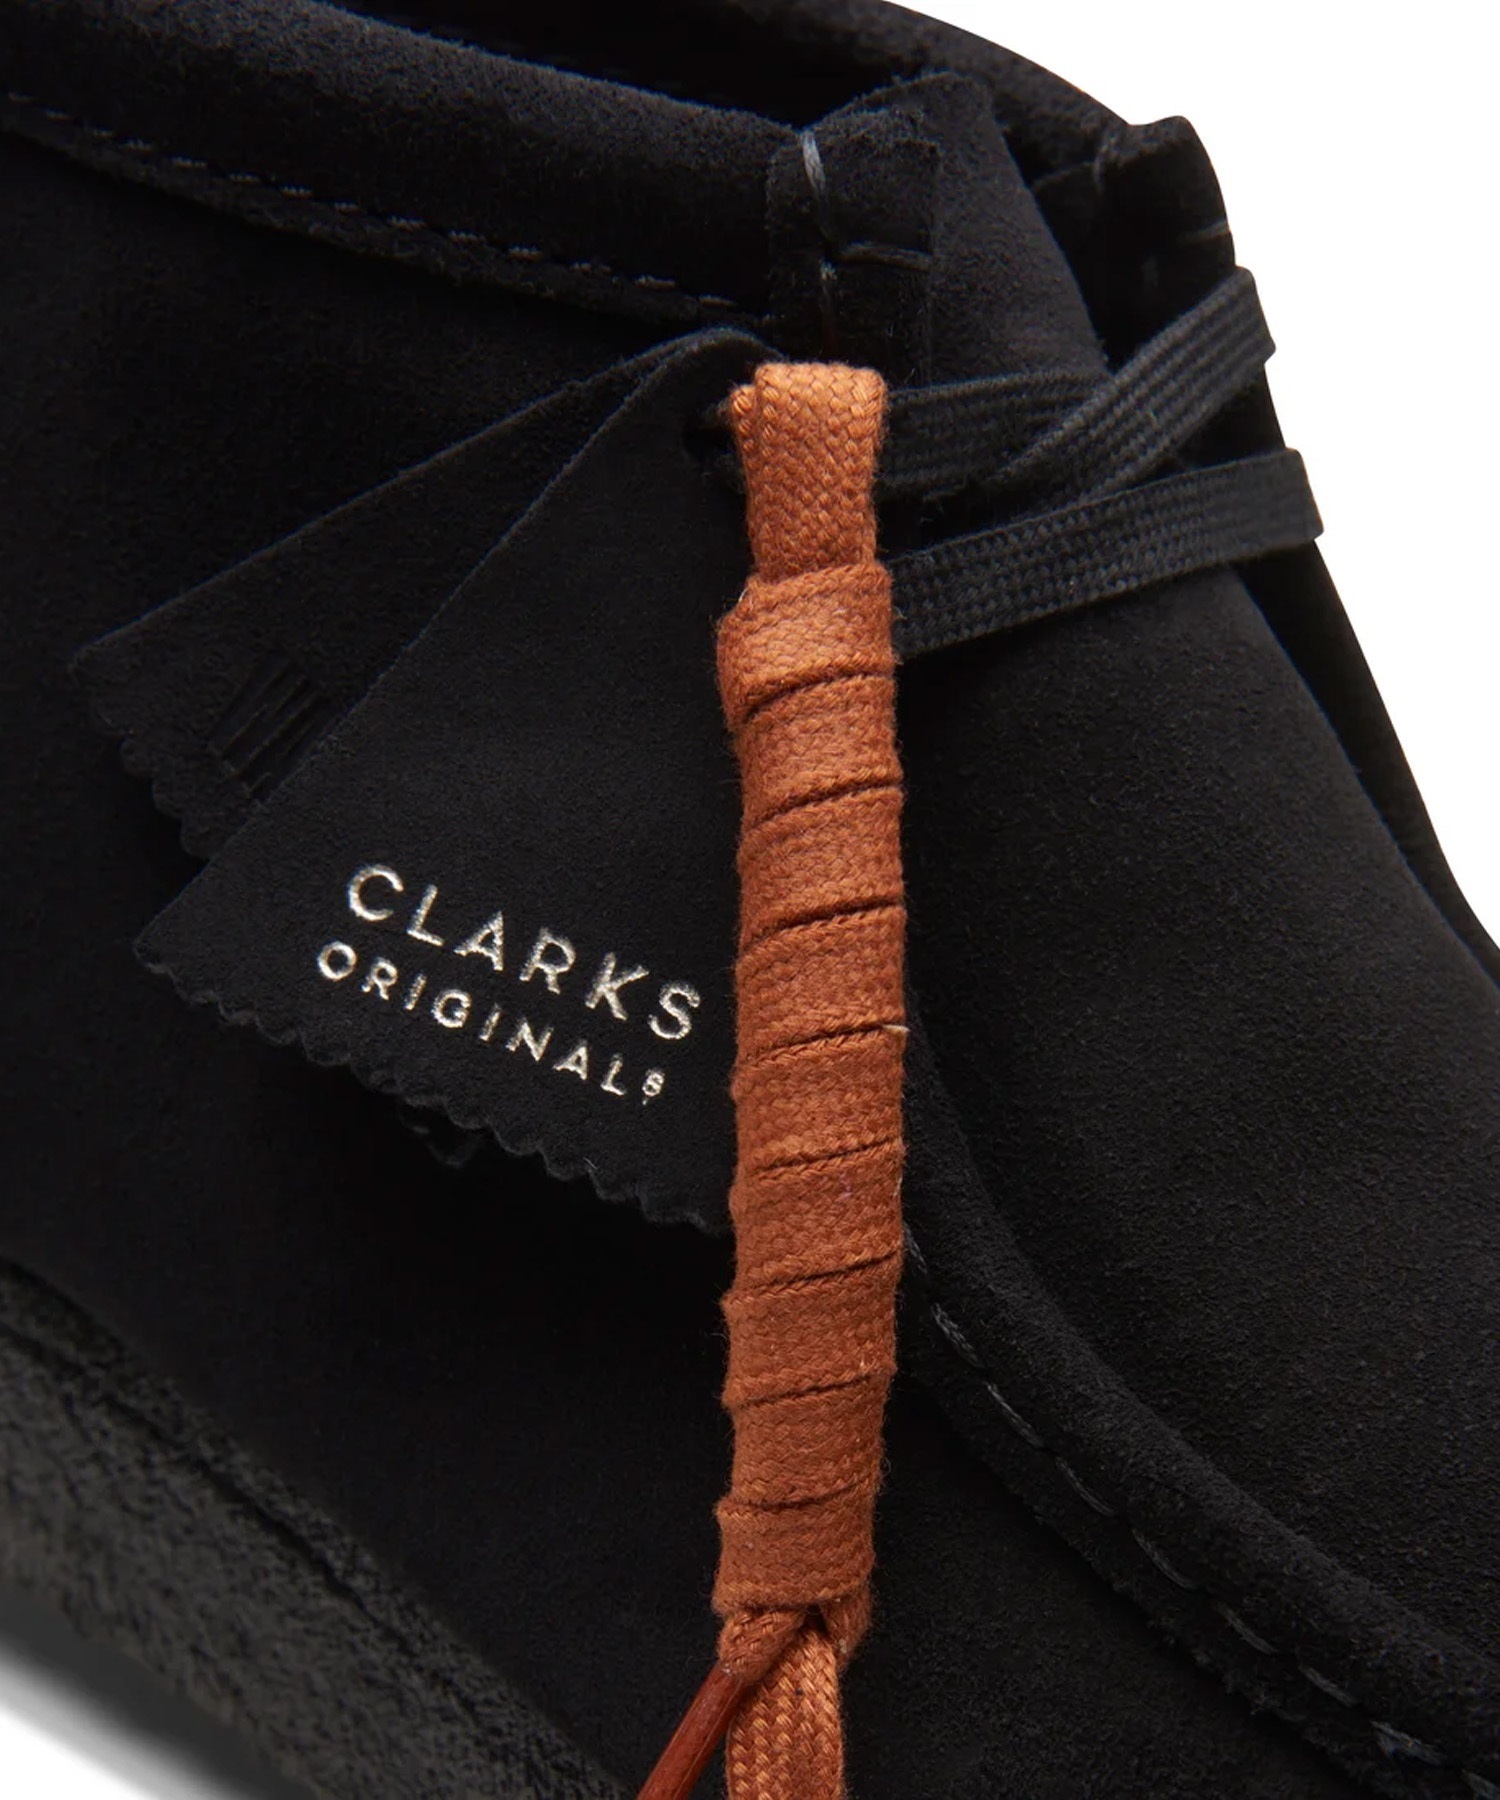 Clarks Originals/クラークス オリジナルス Wallabee Boot メンズ ワラビーブーツ モカシン デッキシューズ ブラックスエード 26155517(BLKSU-25.5cm)